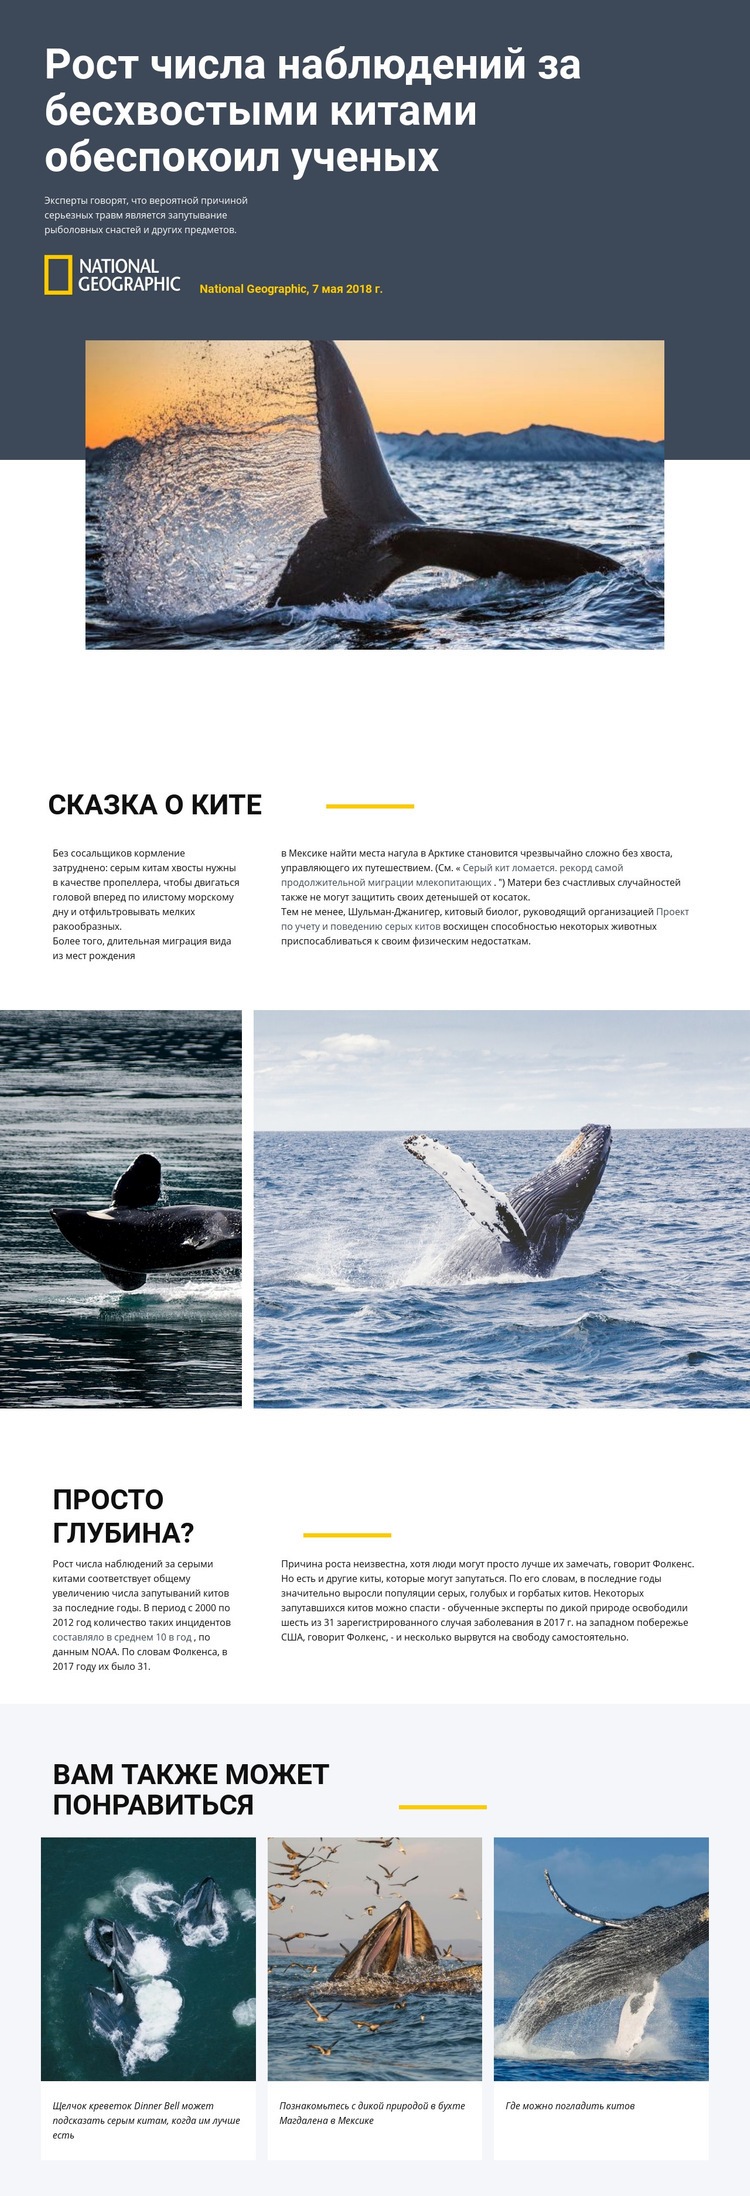 Центр наблюдения за китами Шаблон Joomla